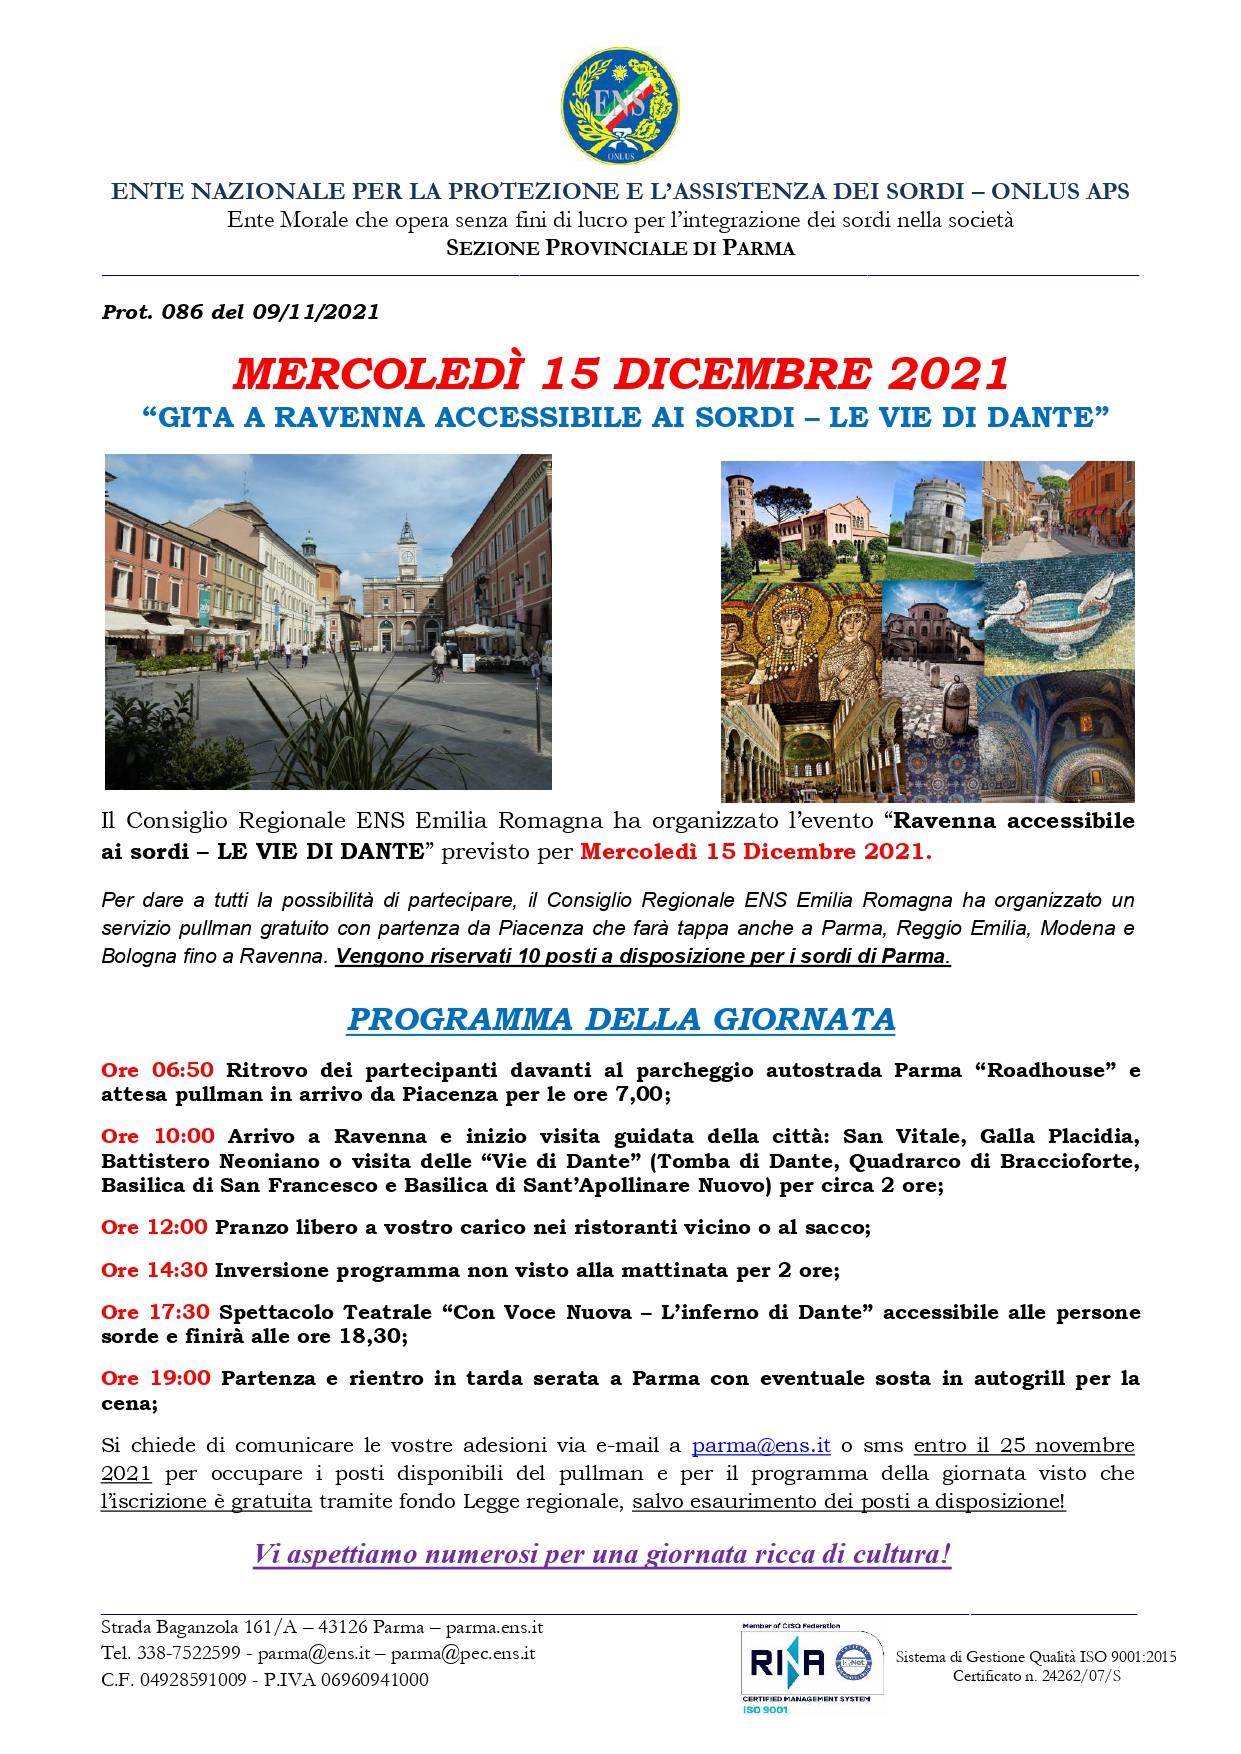 Prot. 086 Gita a Ravenna LE VIE DI DANTE 15 Dicembre 2021